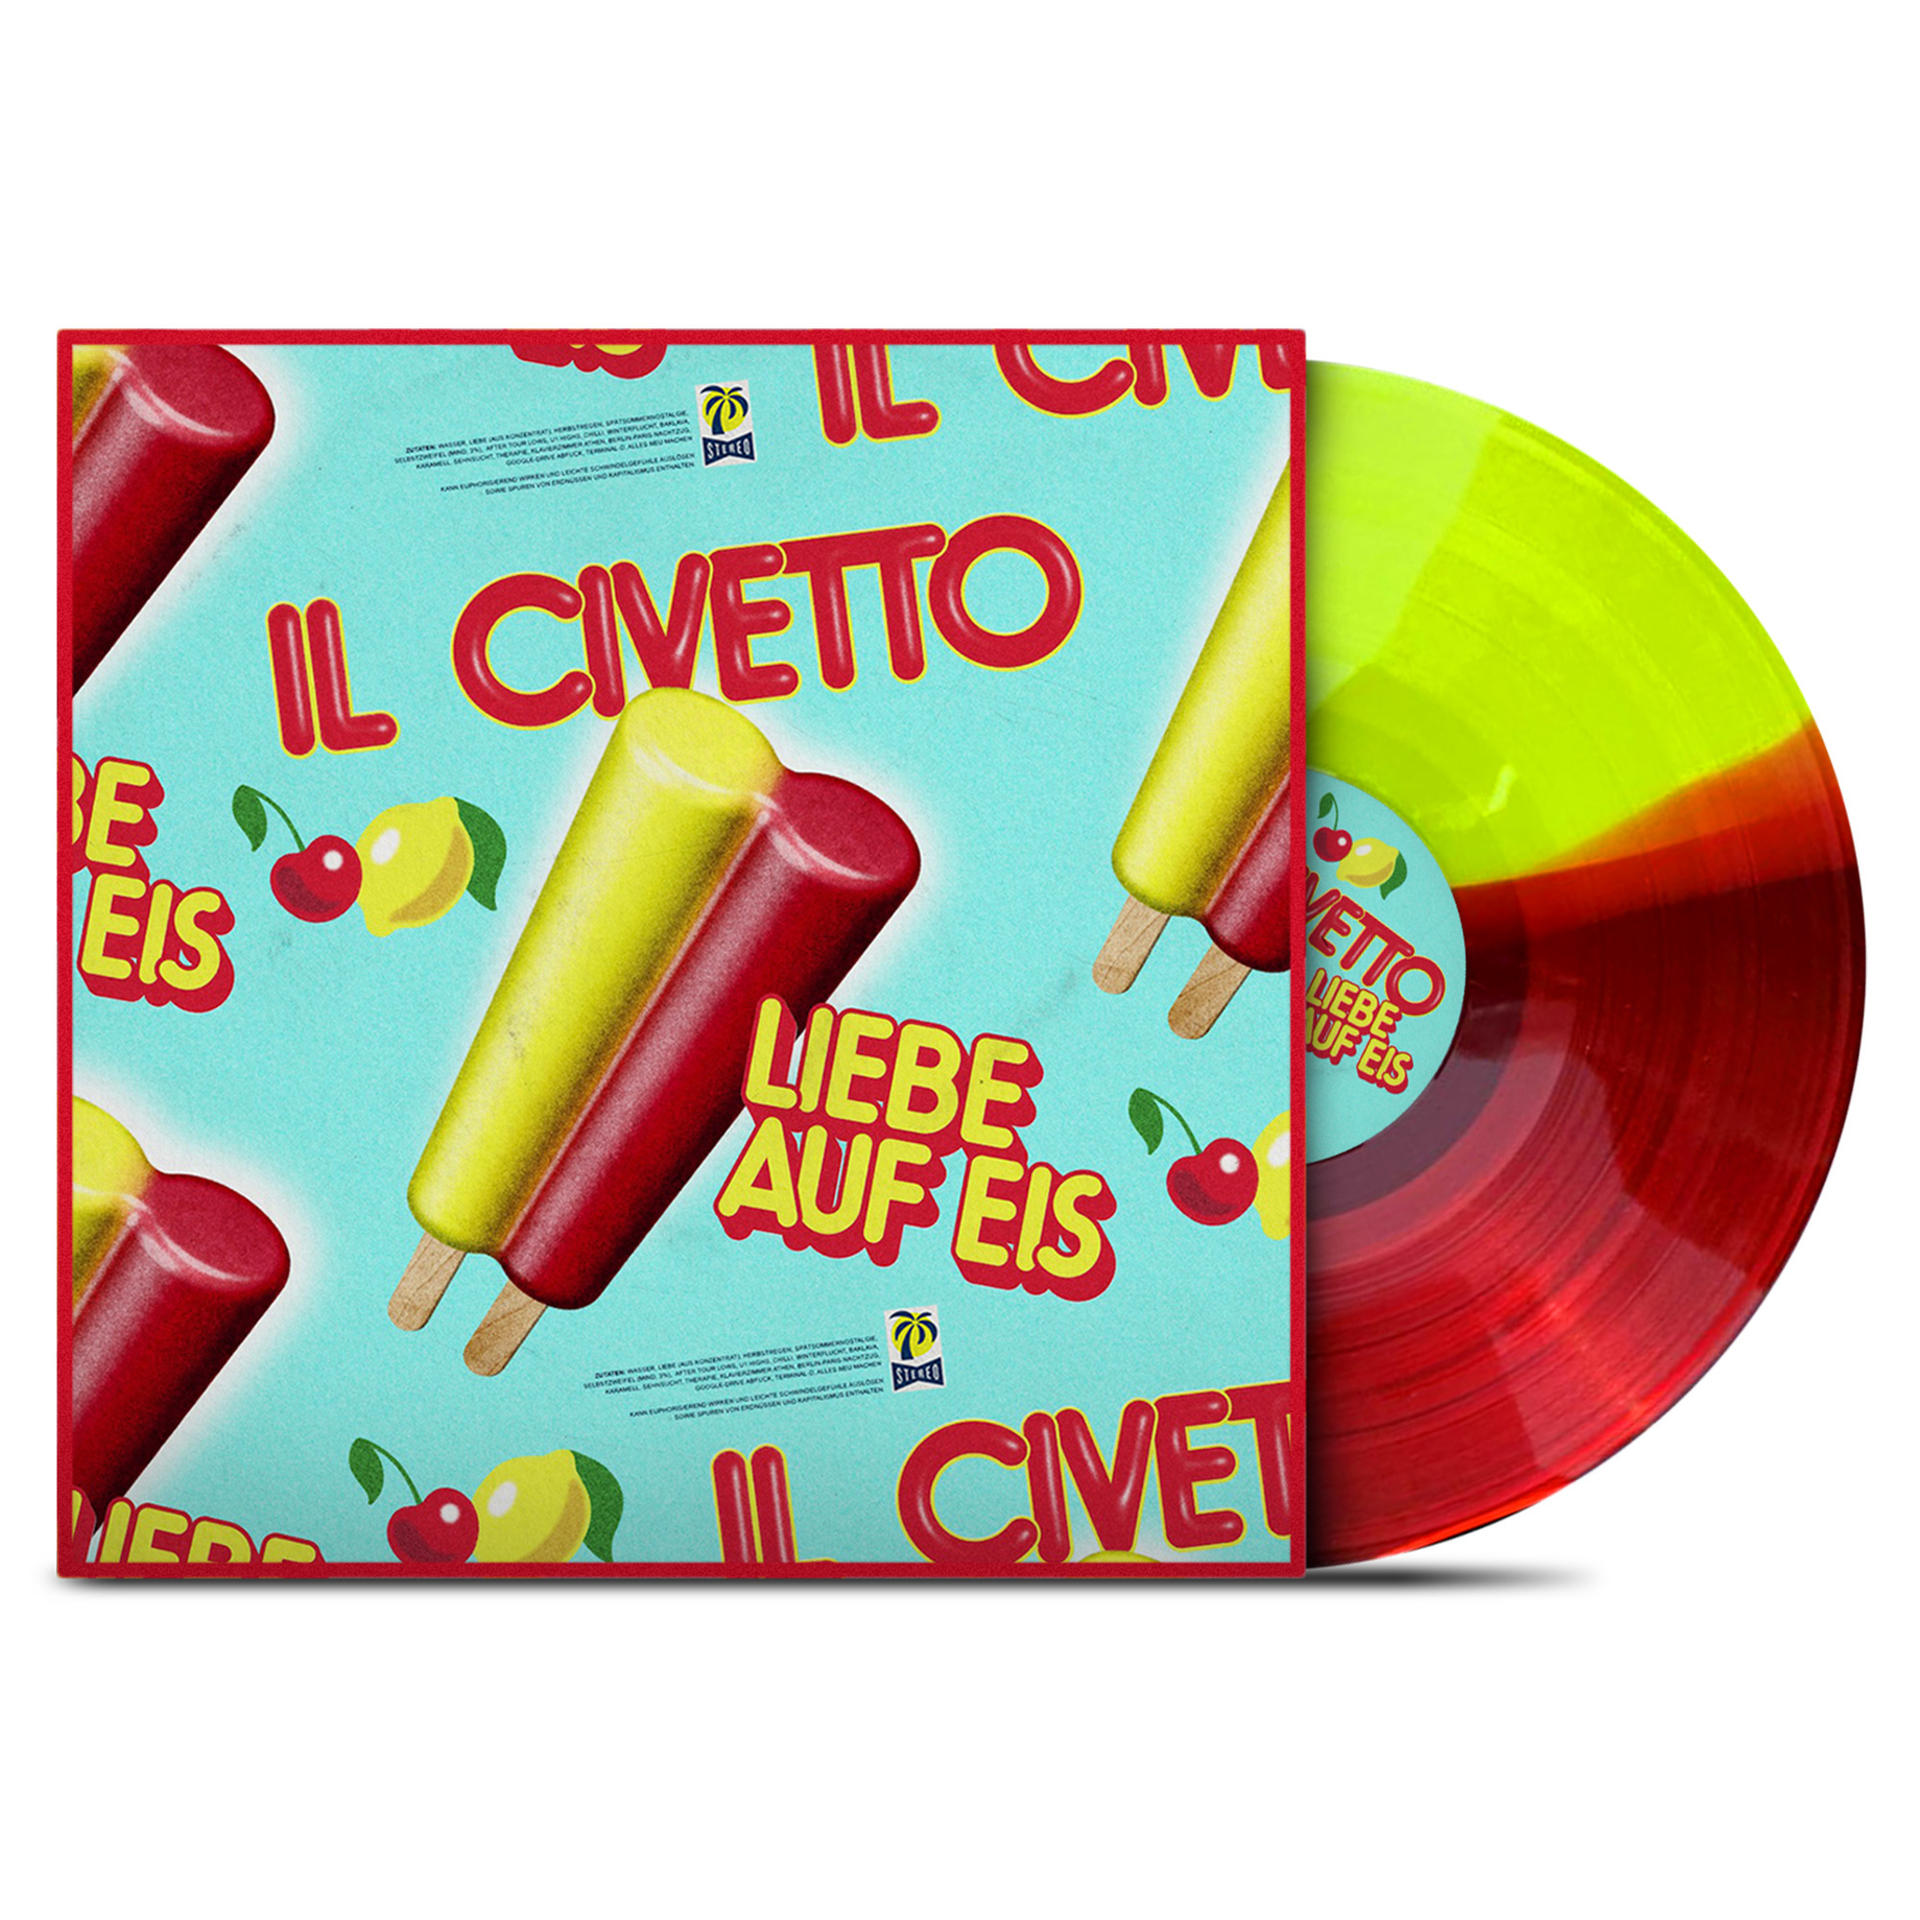 Il Civetto - Liebe auf (Vinyl) Eis 